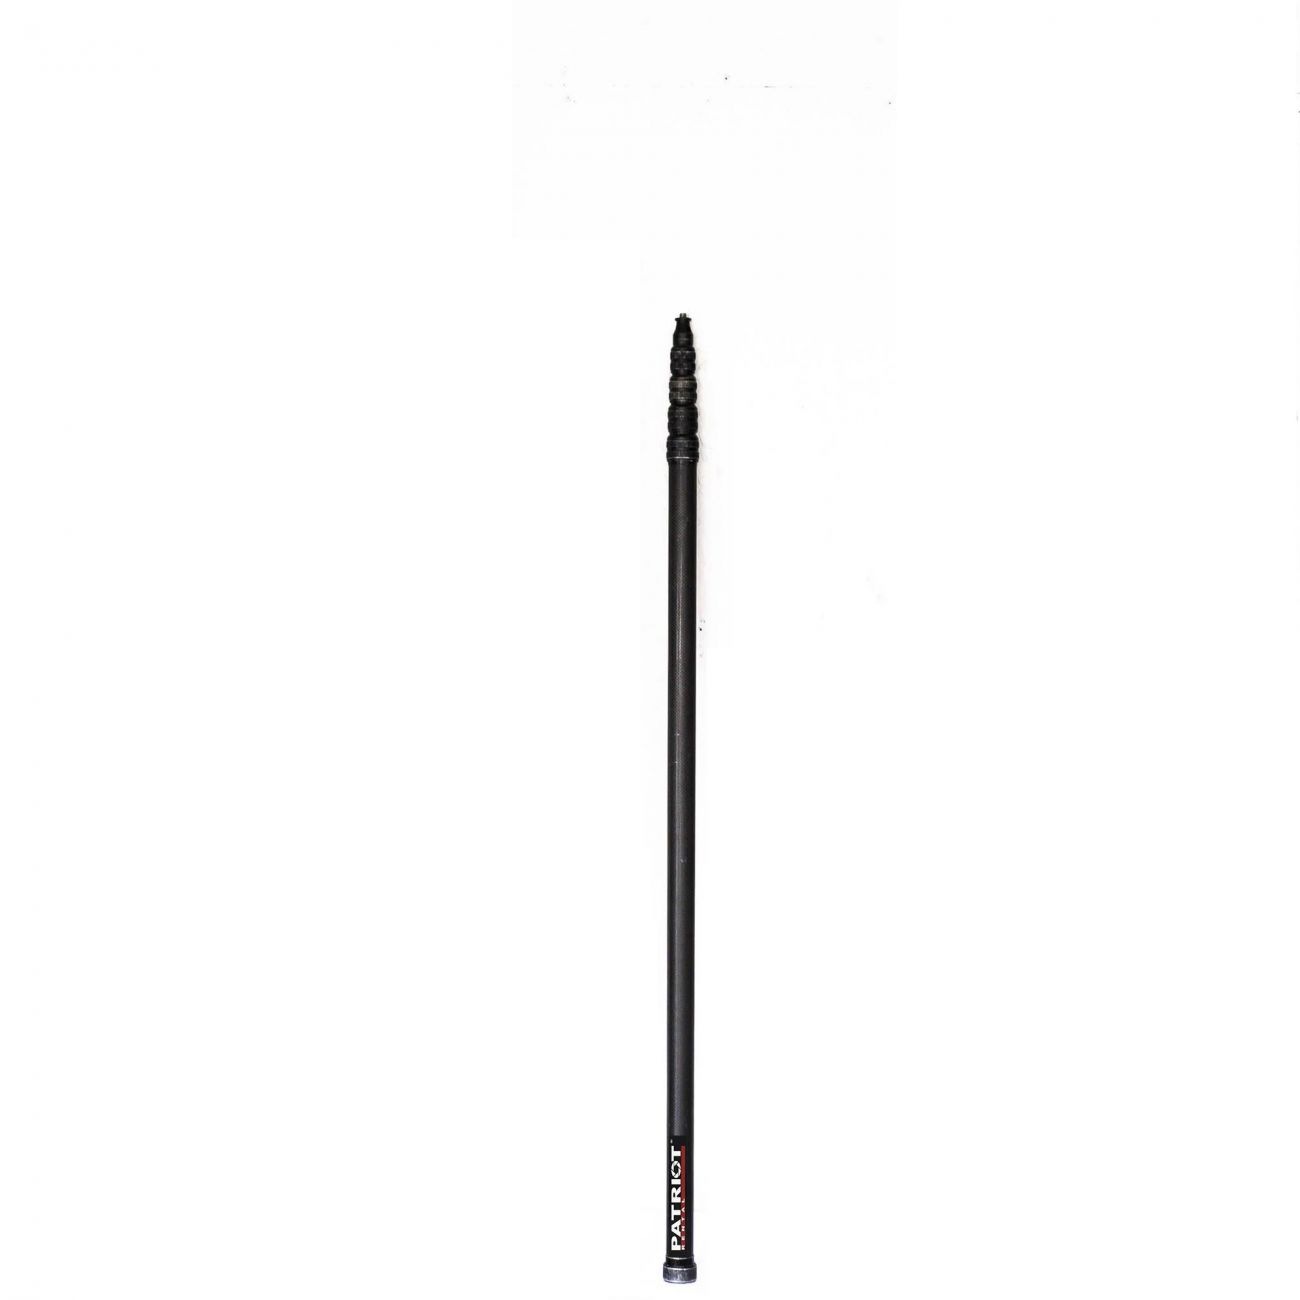 Boompole CAVISION SCPN550F(SPT22F) 5m